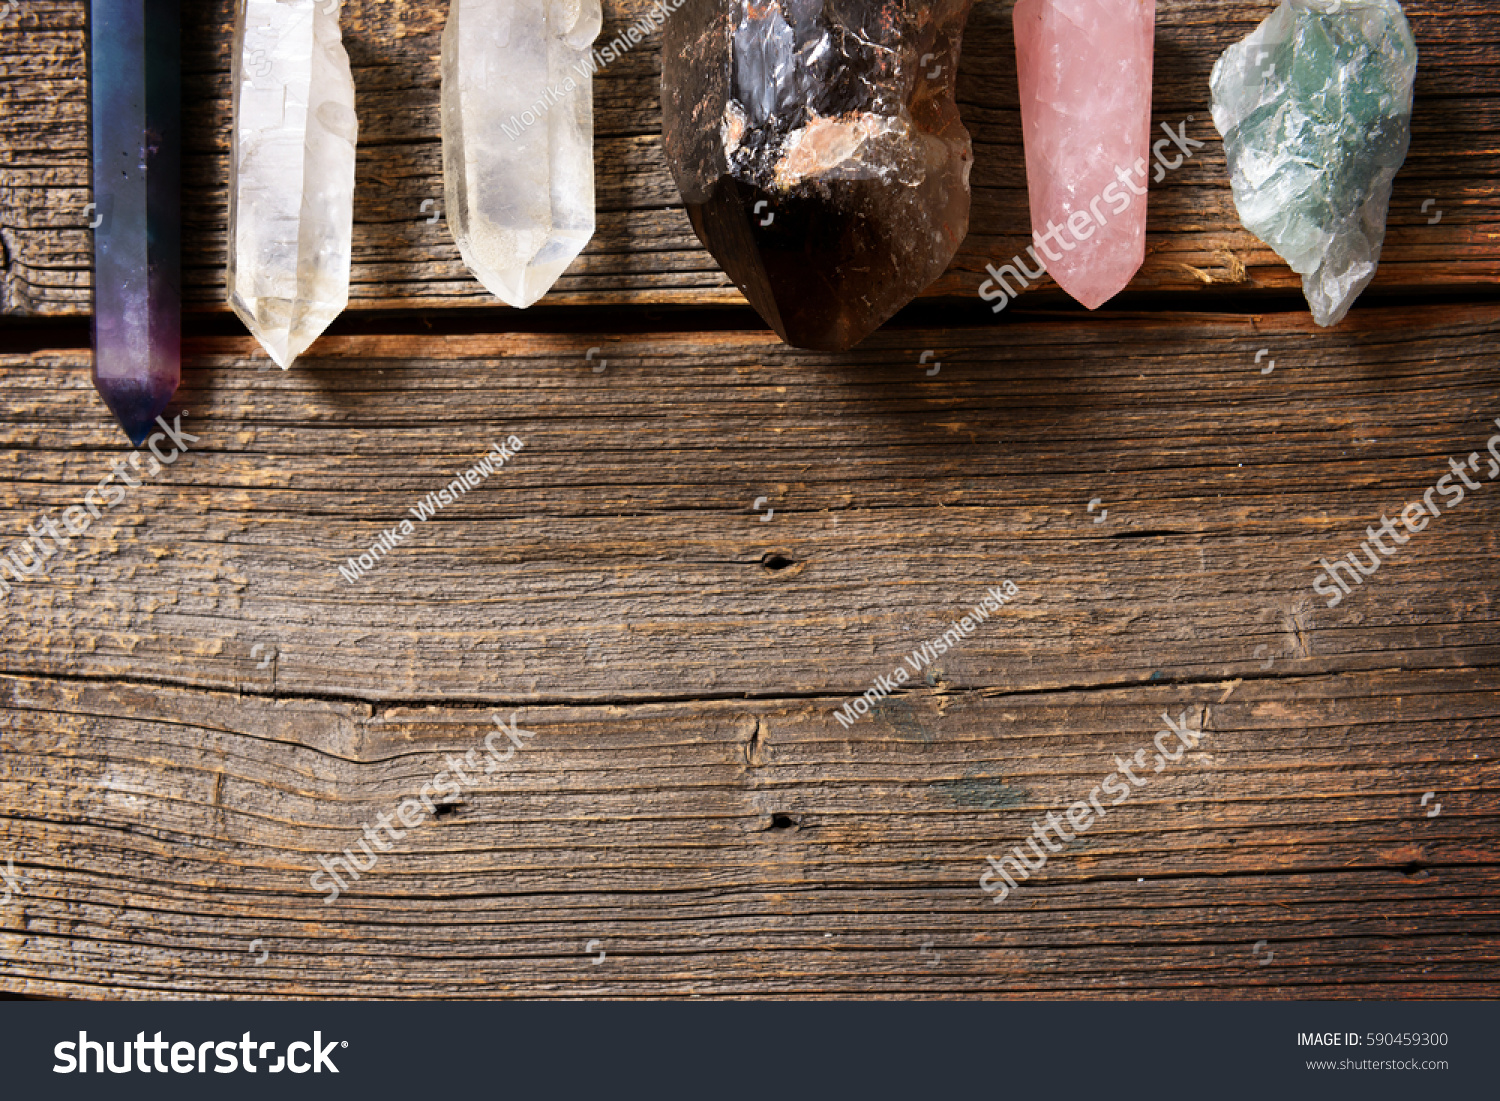 Multiple semi precious gemstones on wooden board
fluorite, quartz, smoky quartz, rose quartz.  #590459300